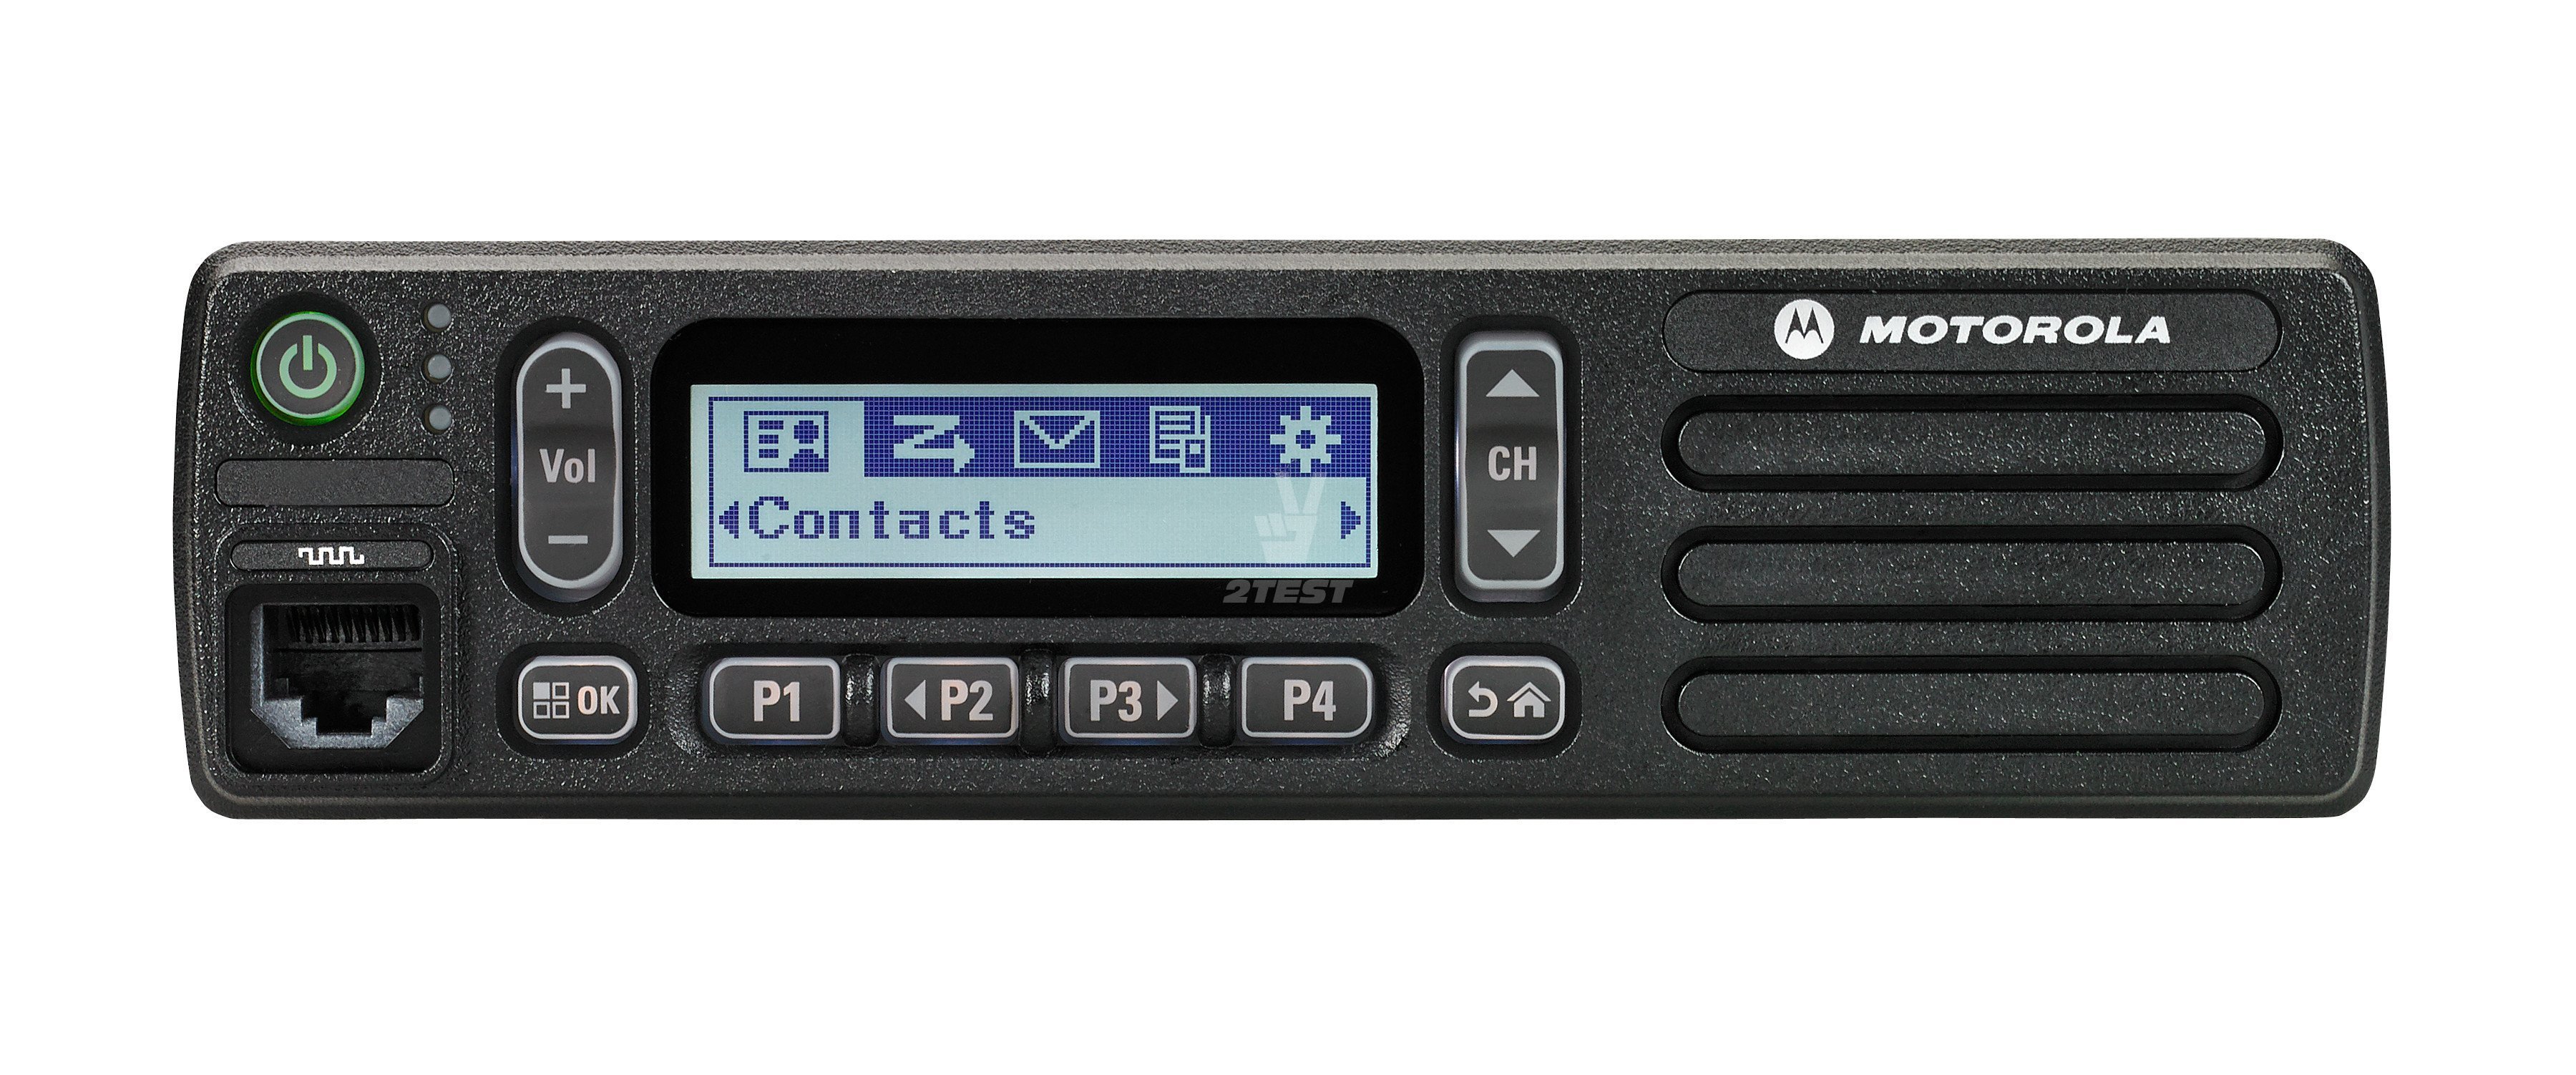 Описание Мобильные радиостанции Motorola MOTOTRBO DM1400 и DM1600